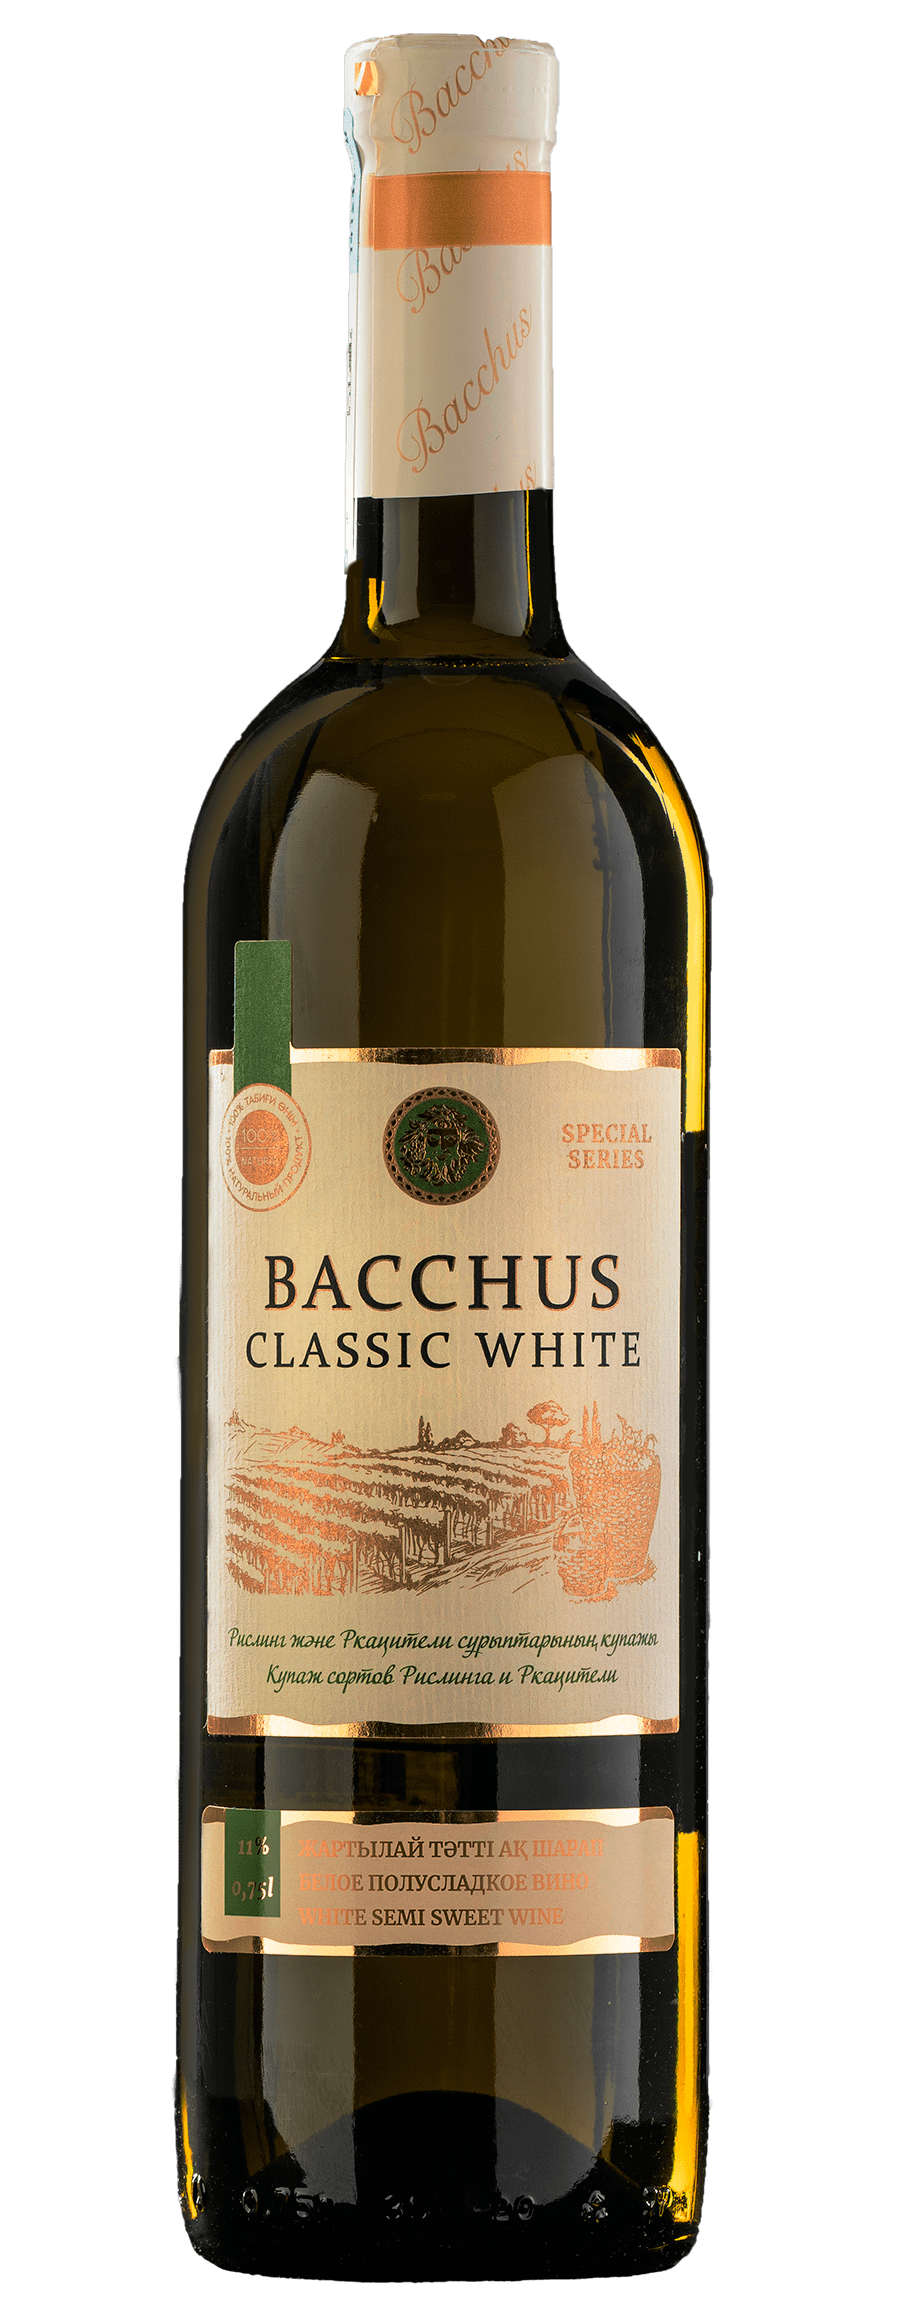 Bacchus classic white